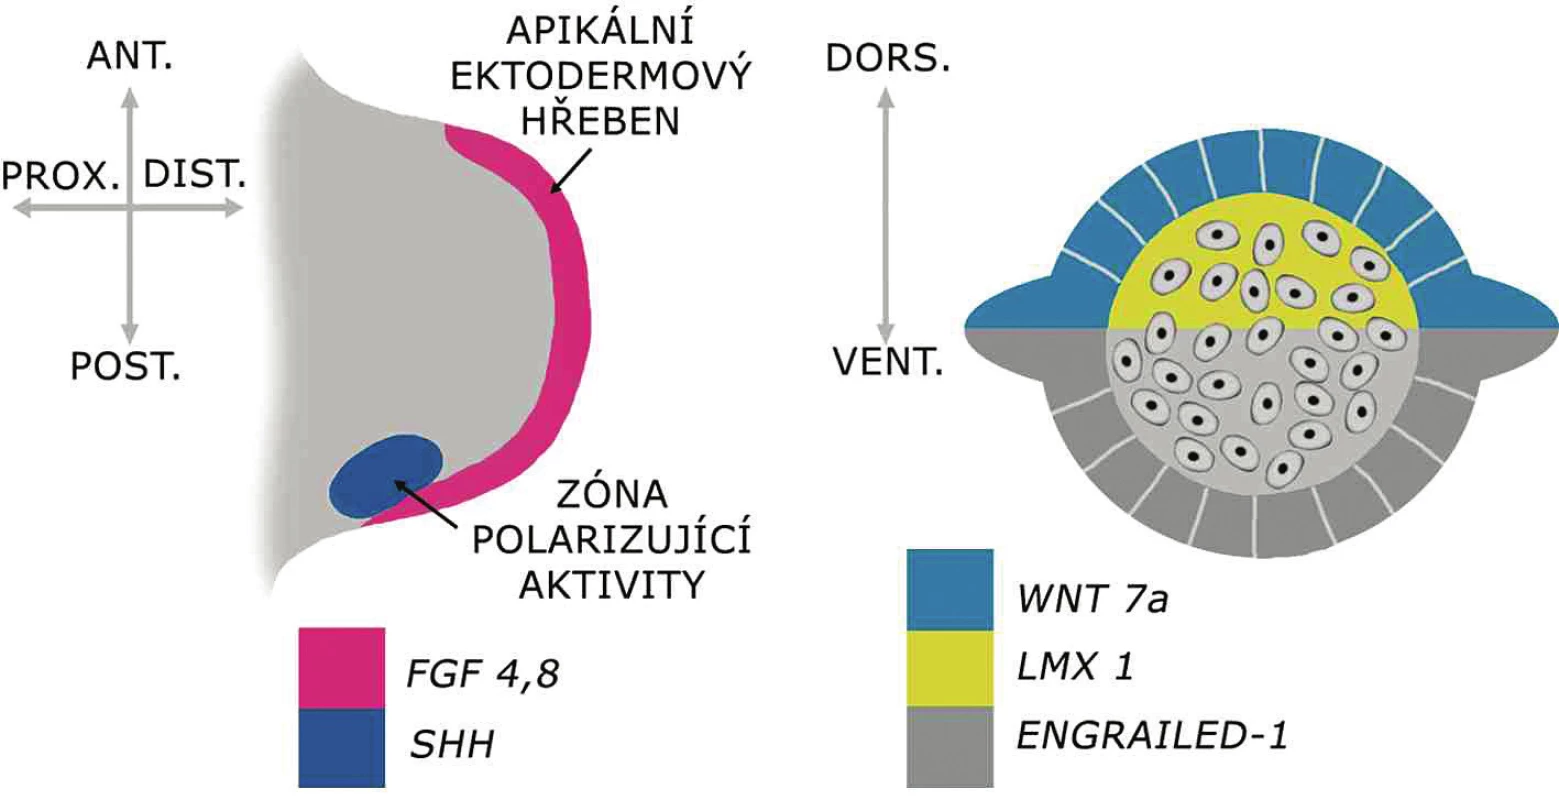 Genová regulace základních os vyvíjející se končetiny  
Apikální ektodermový hřeben produkujíce faktory z rodiny FGF, klíčové pro proximodistální růst končetiny. Palcomalíková (anteroposteriorní) osa je kontrolována buňkami zóny polarizující aktivity produkujícími SHH. Dorzoventrální osa je iniciována expresí WNT7a v dorzálním ektodermu, který vzápětí indukuje expresi LMX1 v dorzálním mezenchymu končetinového pupenu. Ventrální ektoderm exprimuje ENGRAILED1